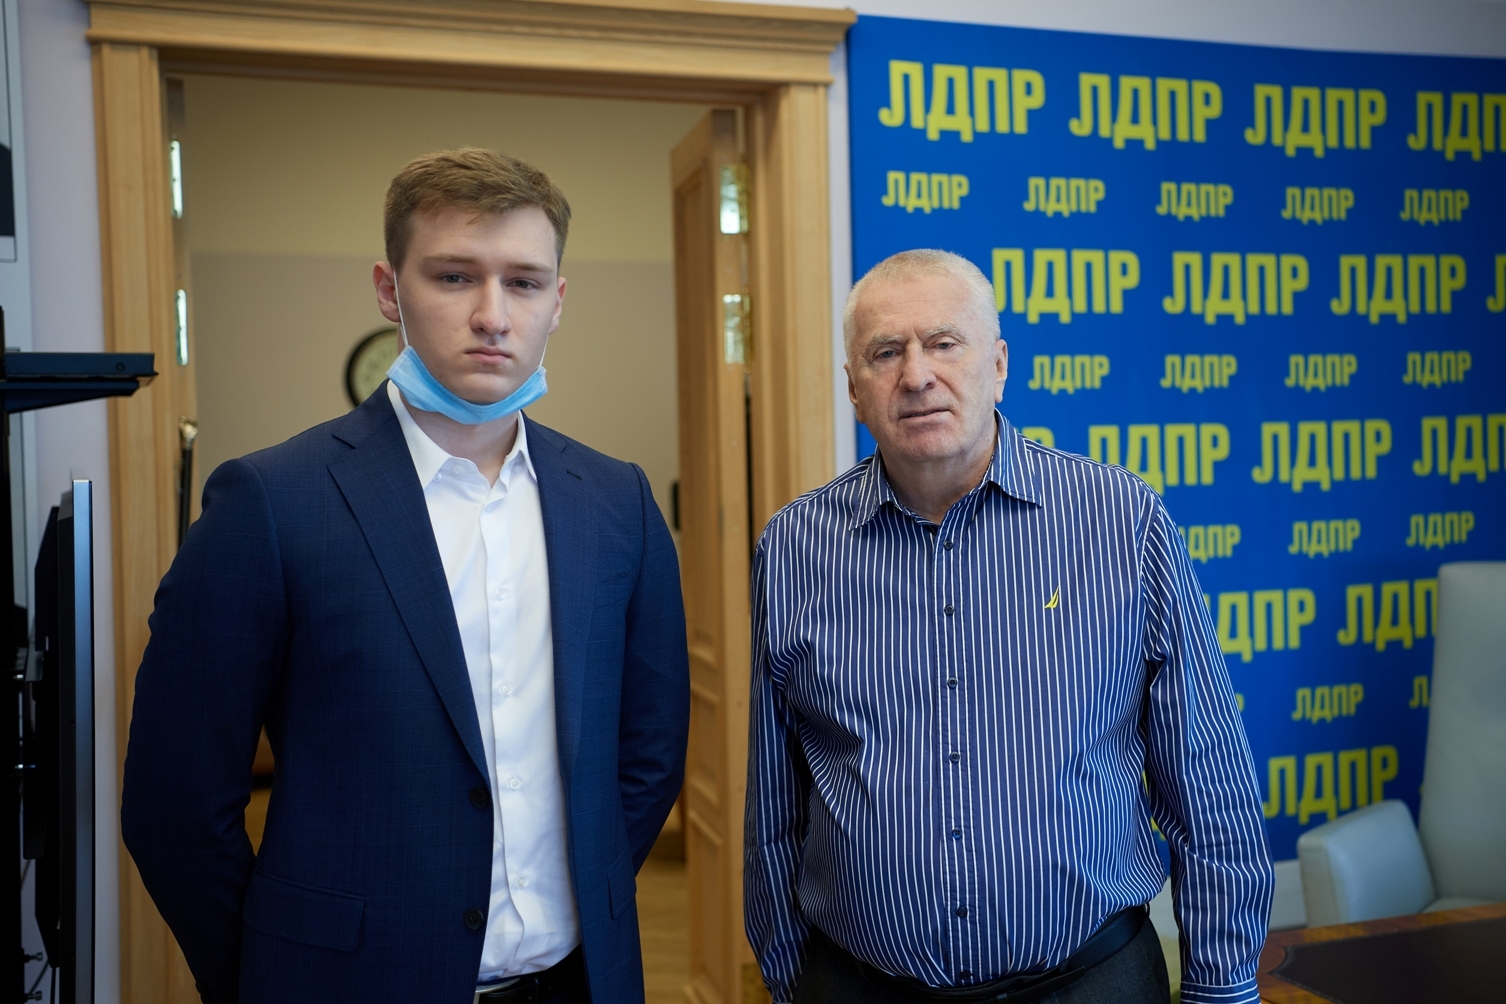 Жириновский пообещал помощь семье Фургала